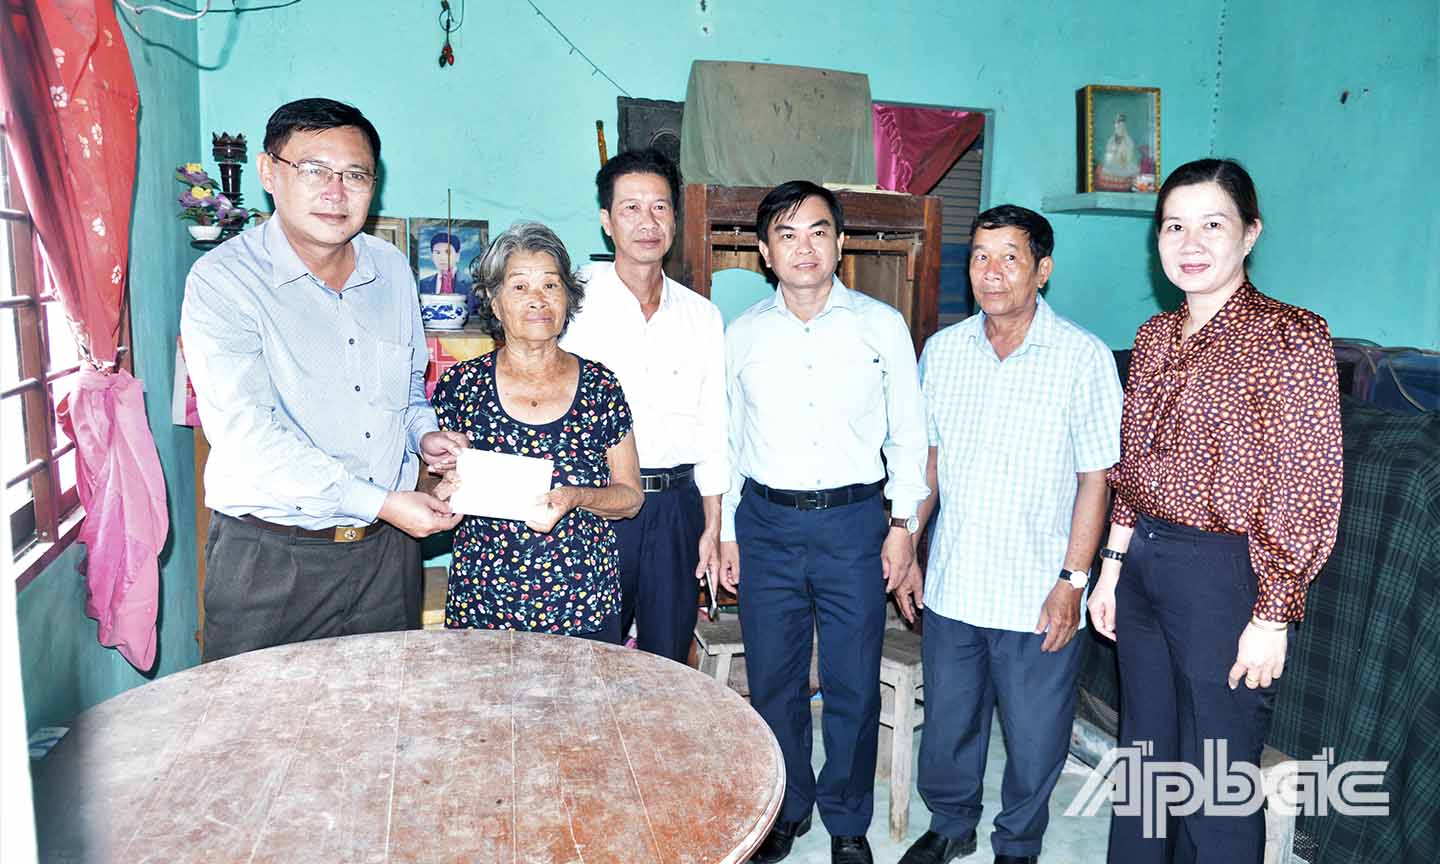 Đồng chí Đỗ Tấn Hùng (bìa trái) cùng các thành viên trong đoàn đến thăm và tặng quà gia đình bà Huỳnh Thị Cầu, vợ liệt sĩ, ấp Tân Phát, xã Tân Hòa Đông.